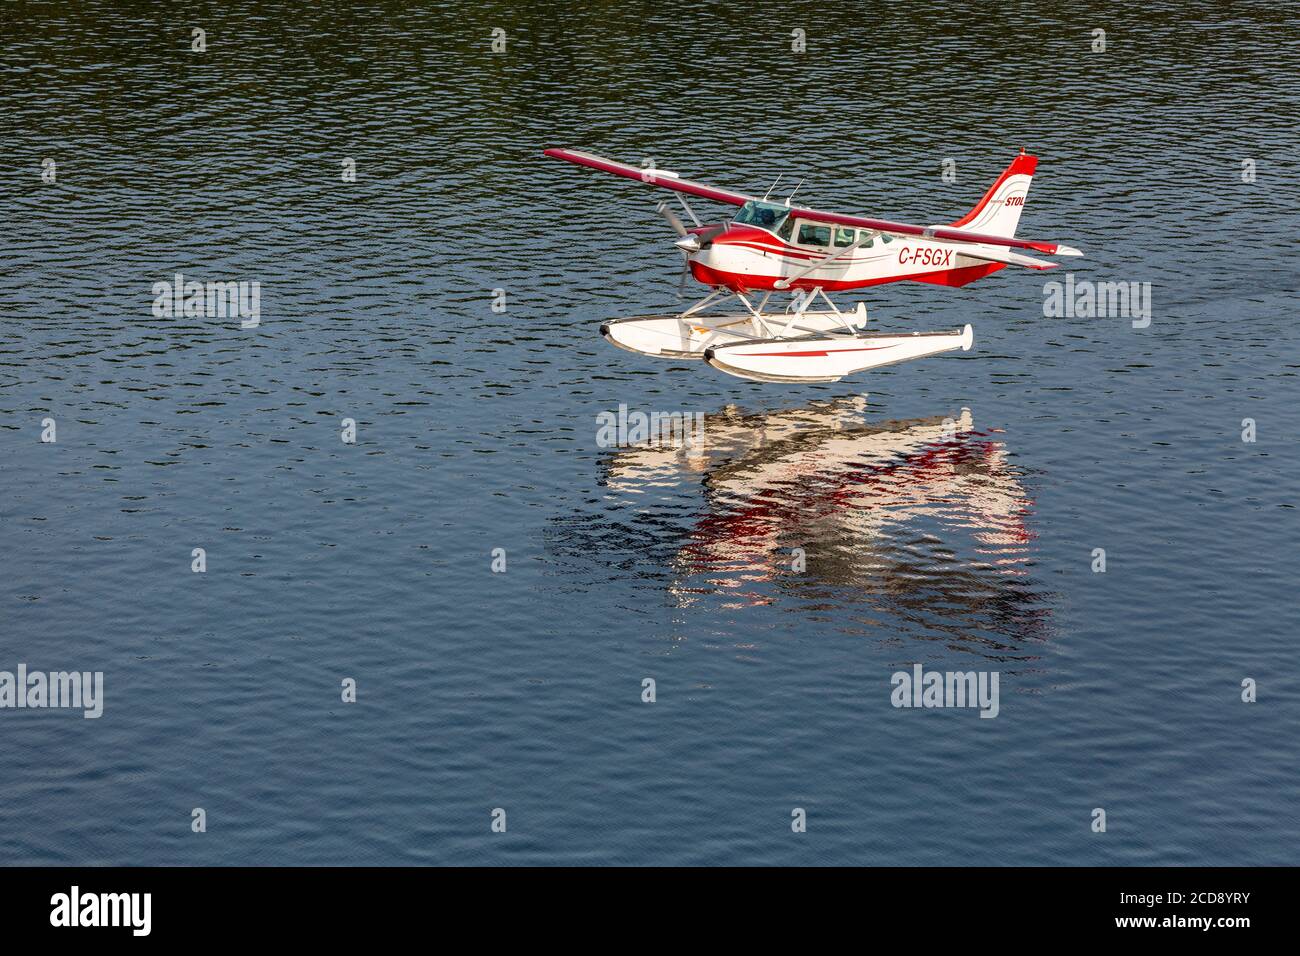 Kanada, Provinz Quebec, Mauricie Region, Hydravion Aventure, Cessna 206 Wasserflugzeug Flug über Seen und Wälder, Landung auf einem See Stockfoto